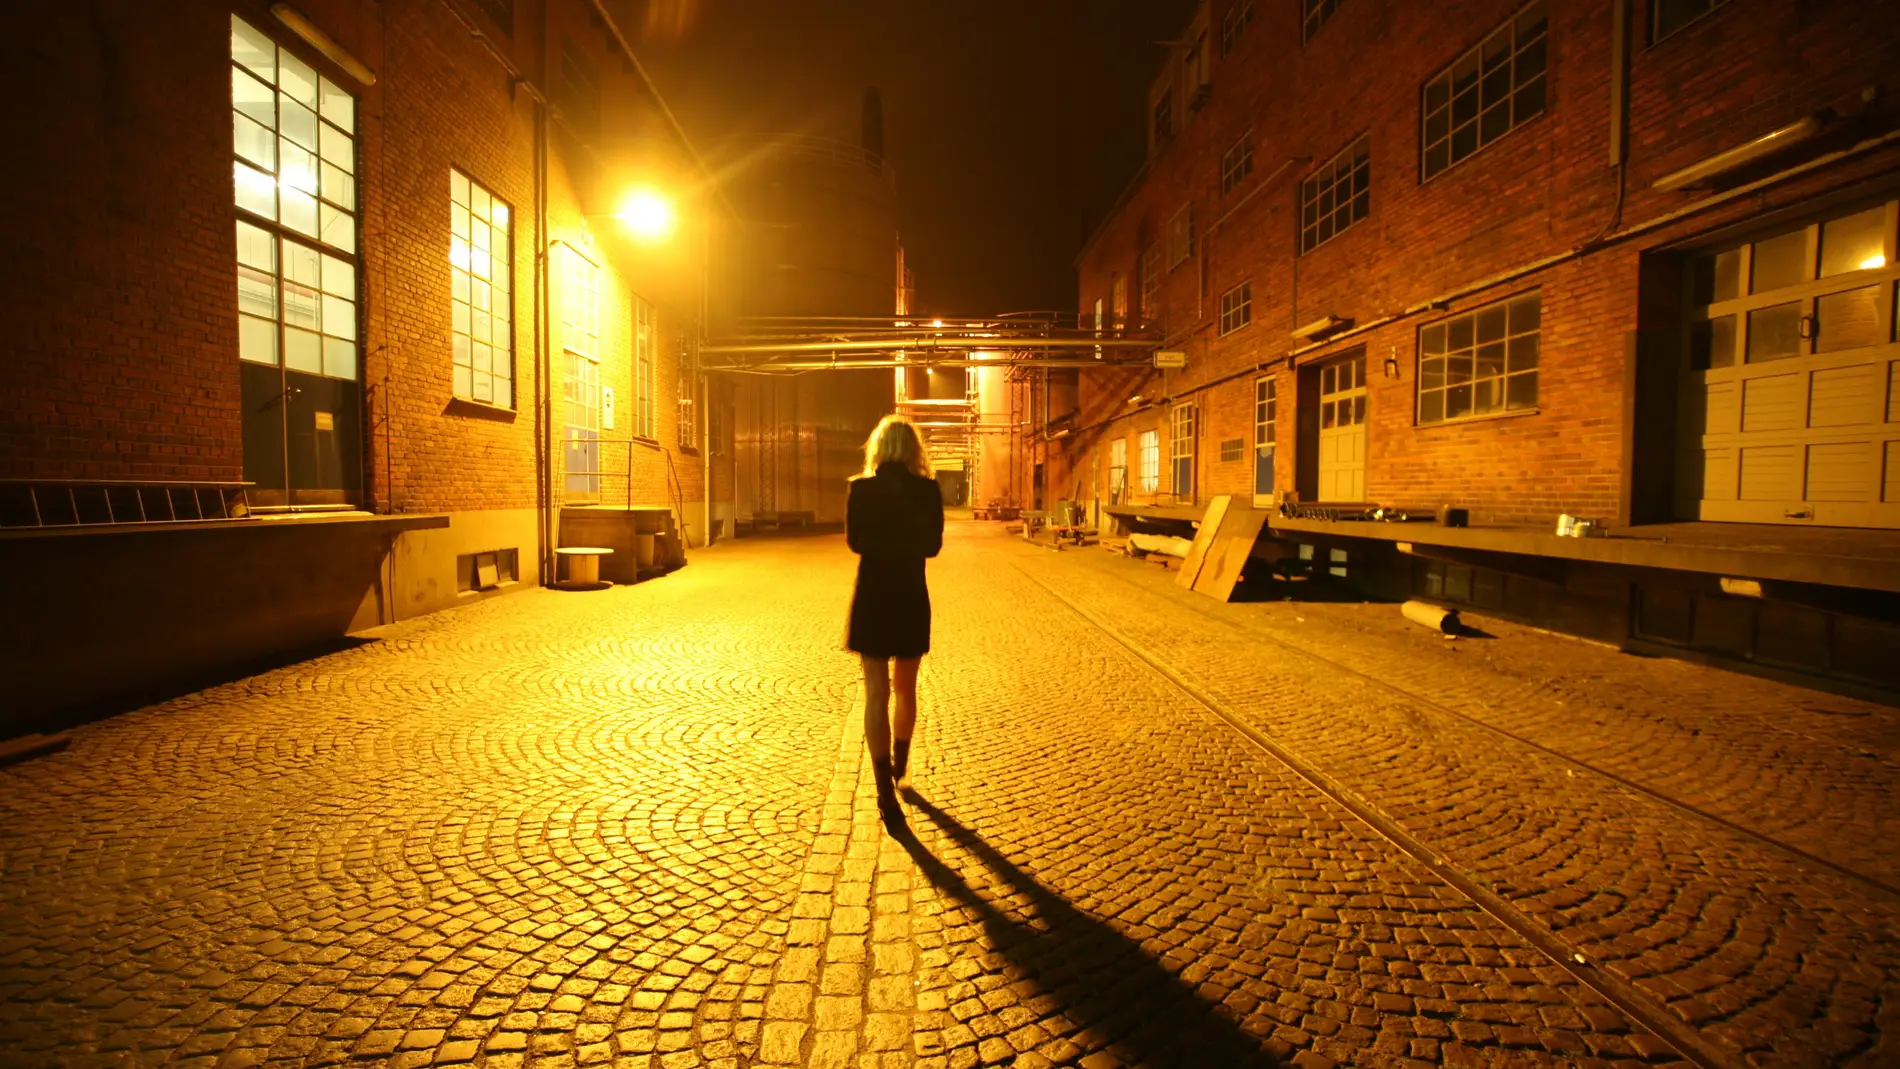 Una chica camina sola por la calle